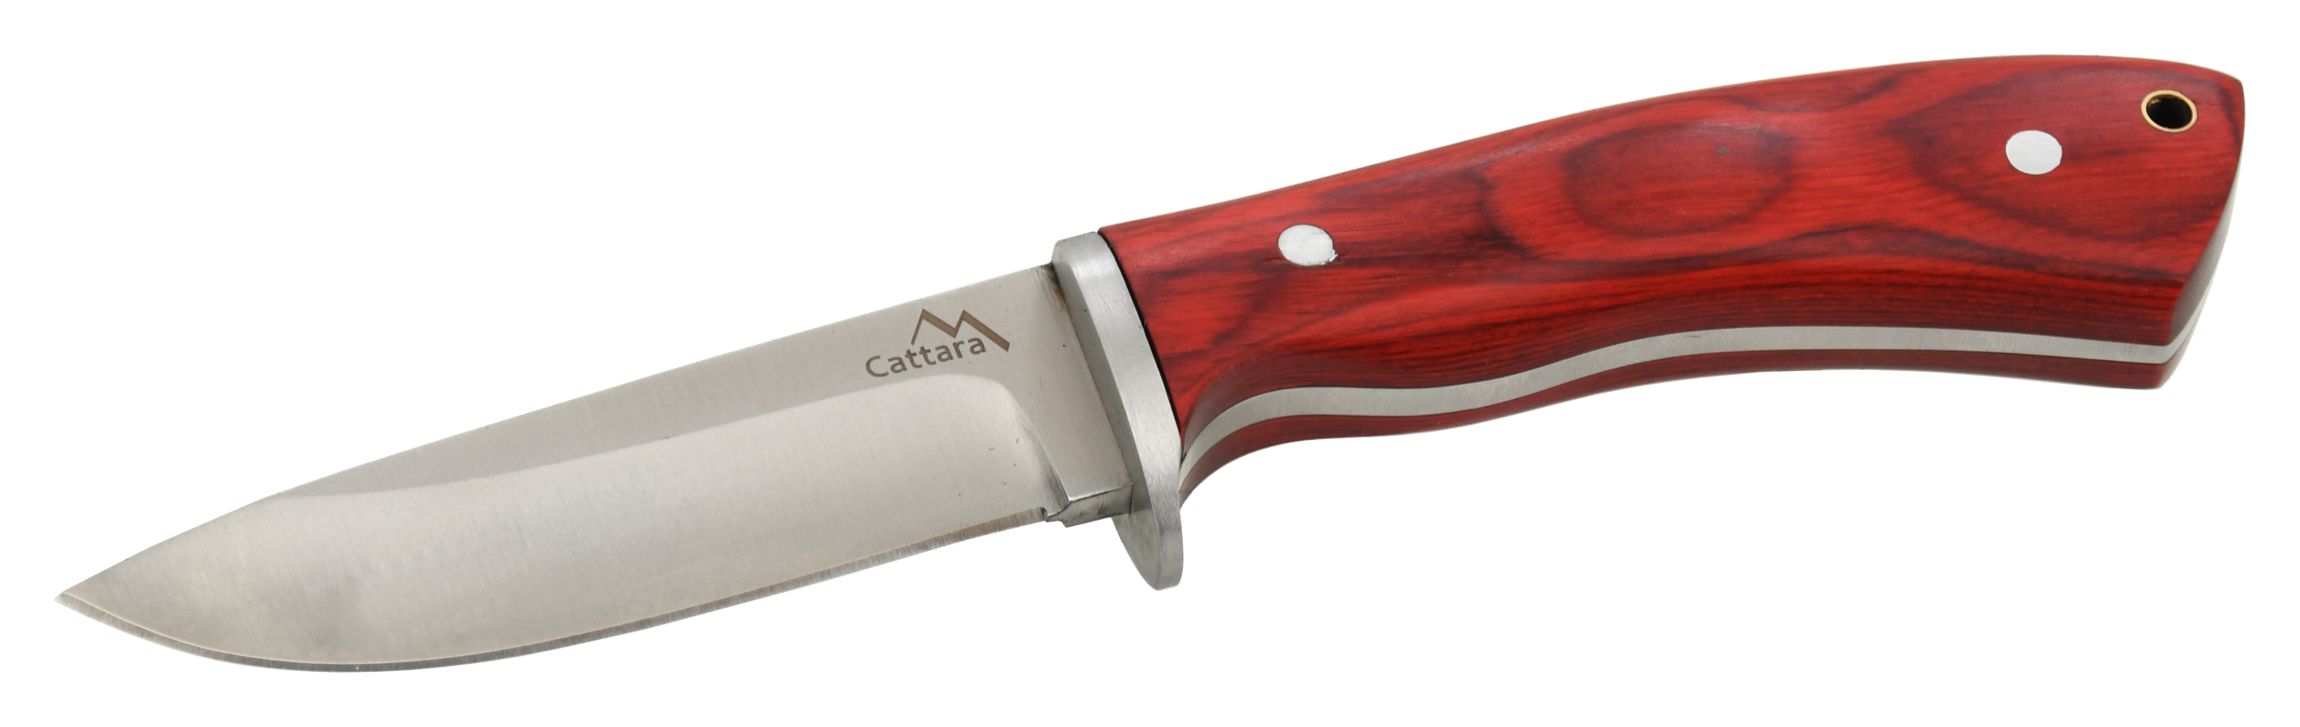 CATTARA Nůž Cattara TRAPPER s koženým pouzdrem 21cm